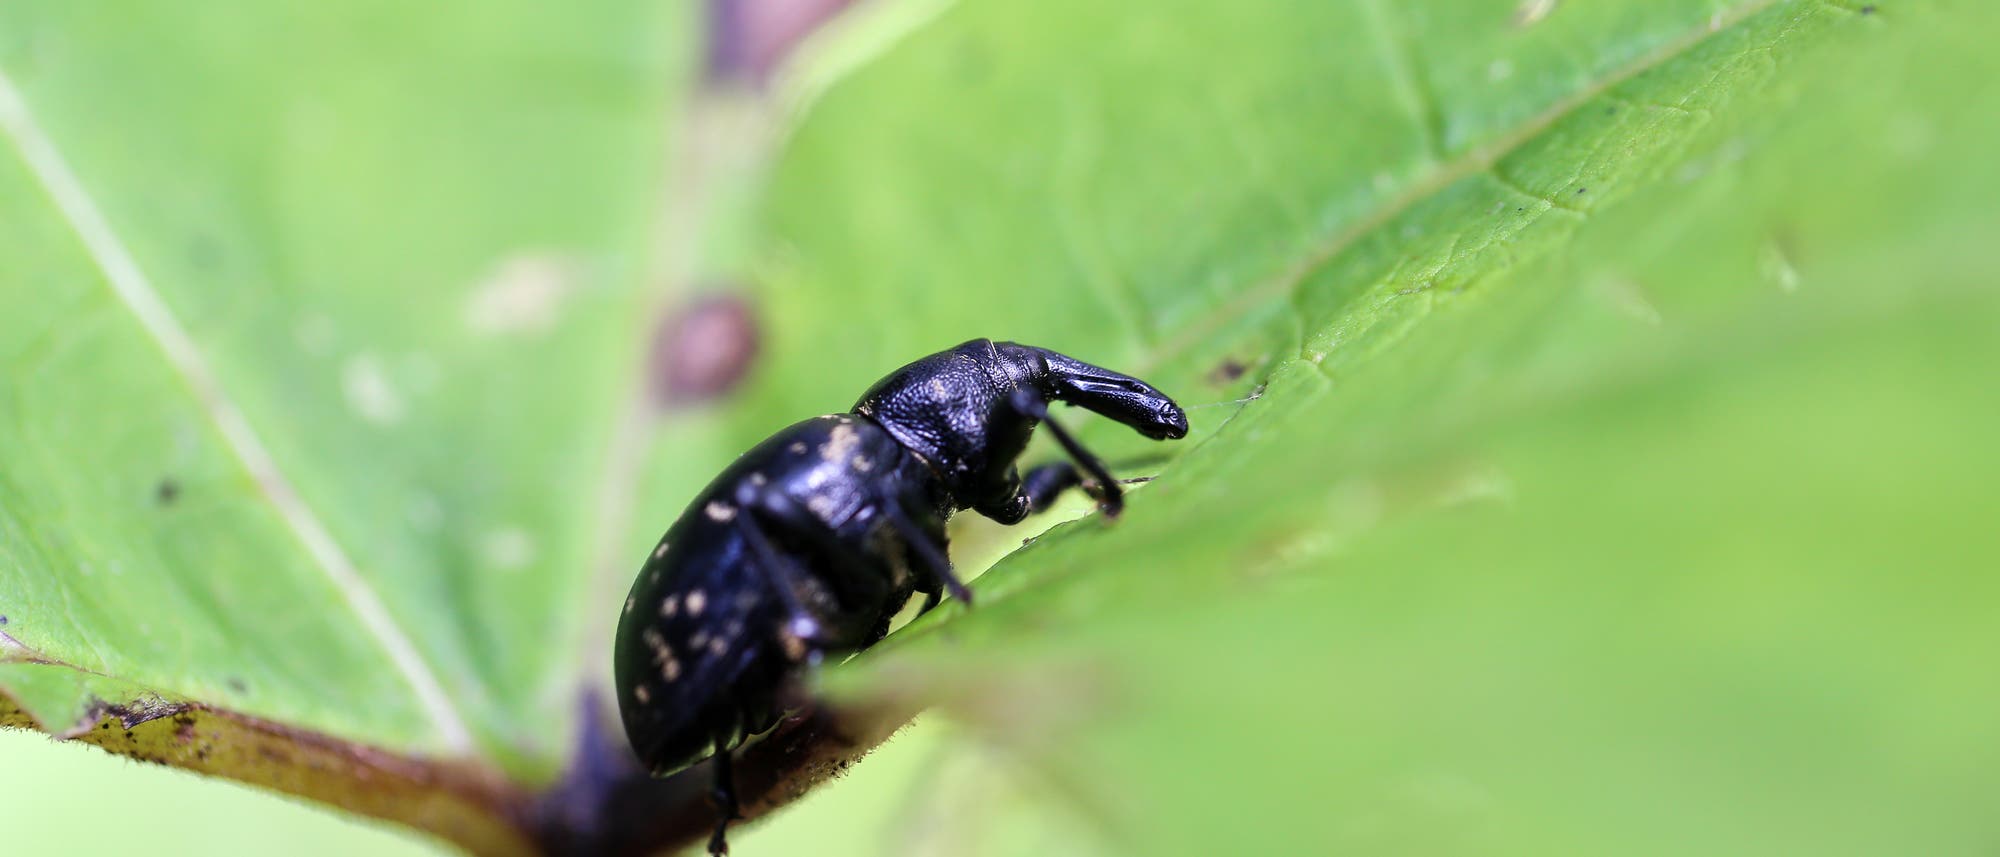 Ein Rüsselkäfer (beachtet den Rüssel) auf einem Blatt.